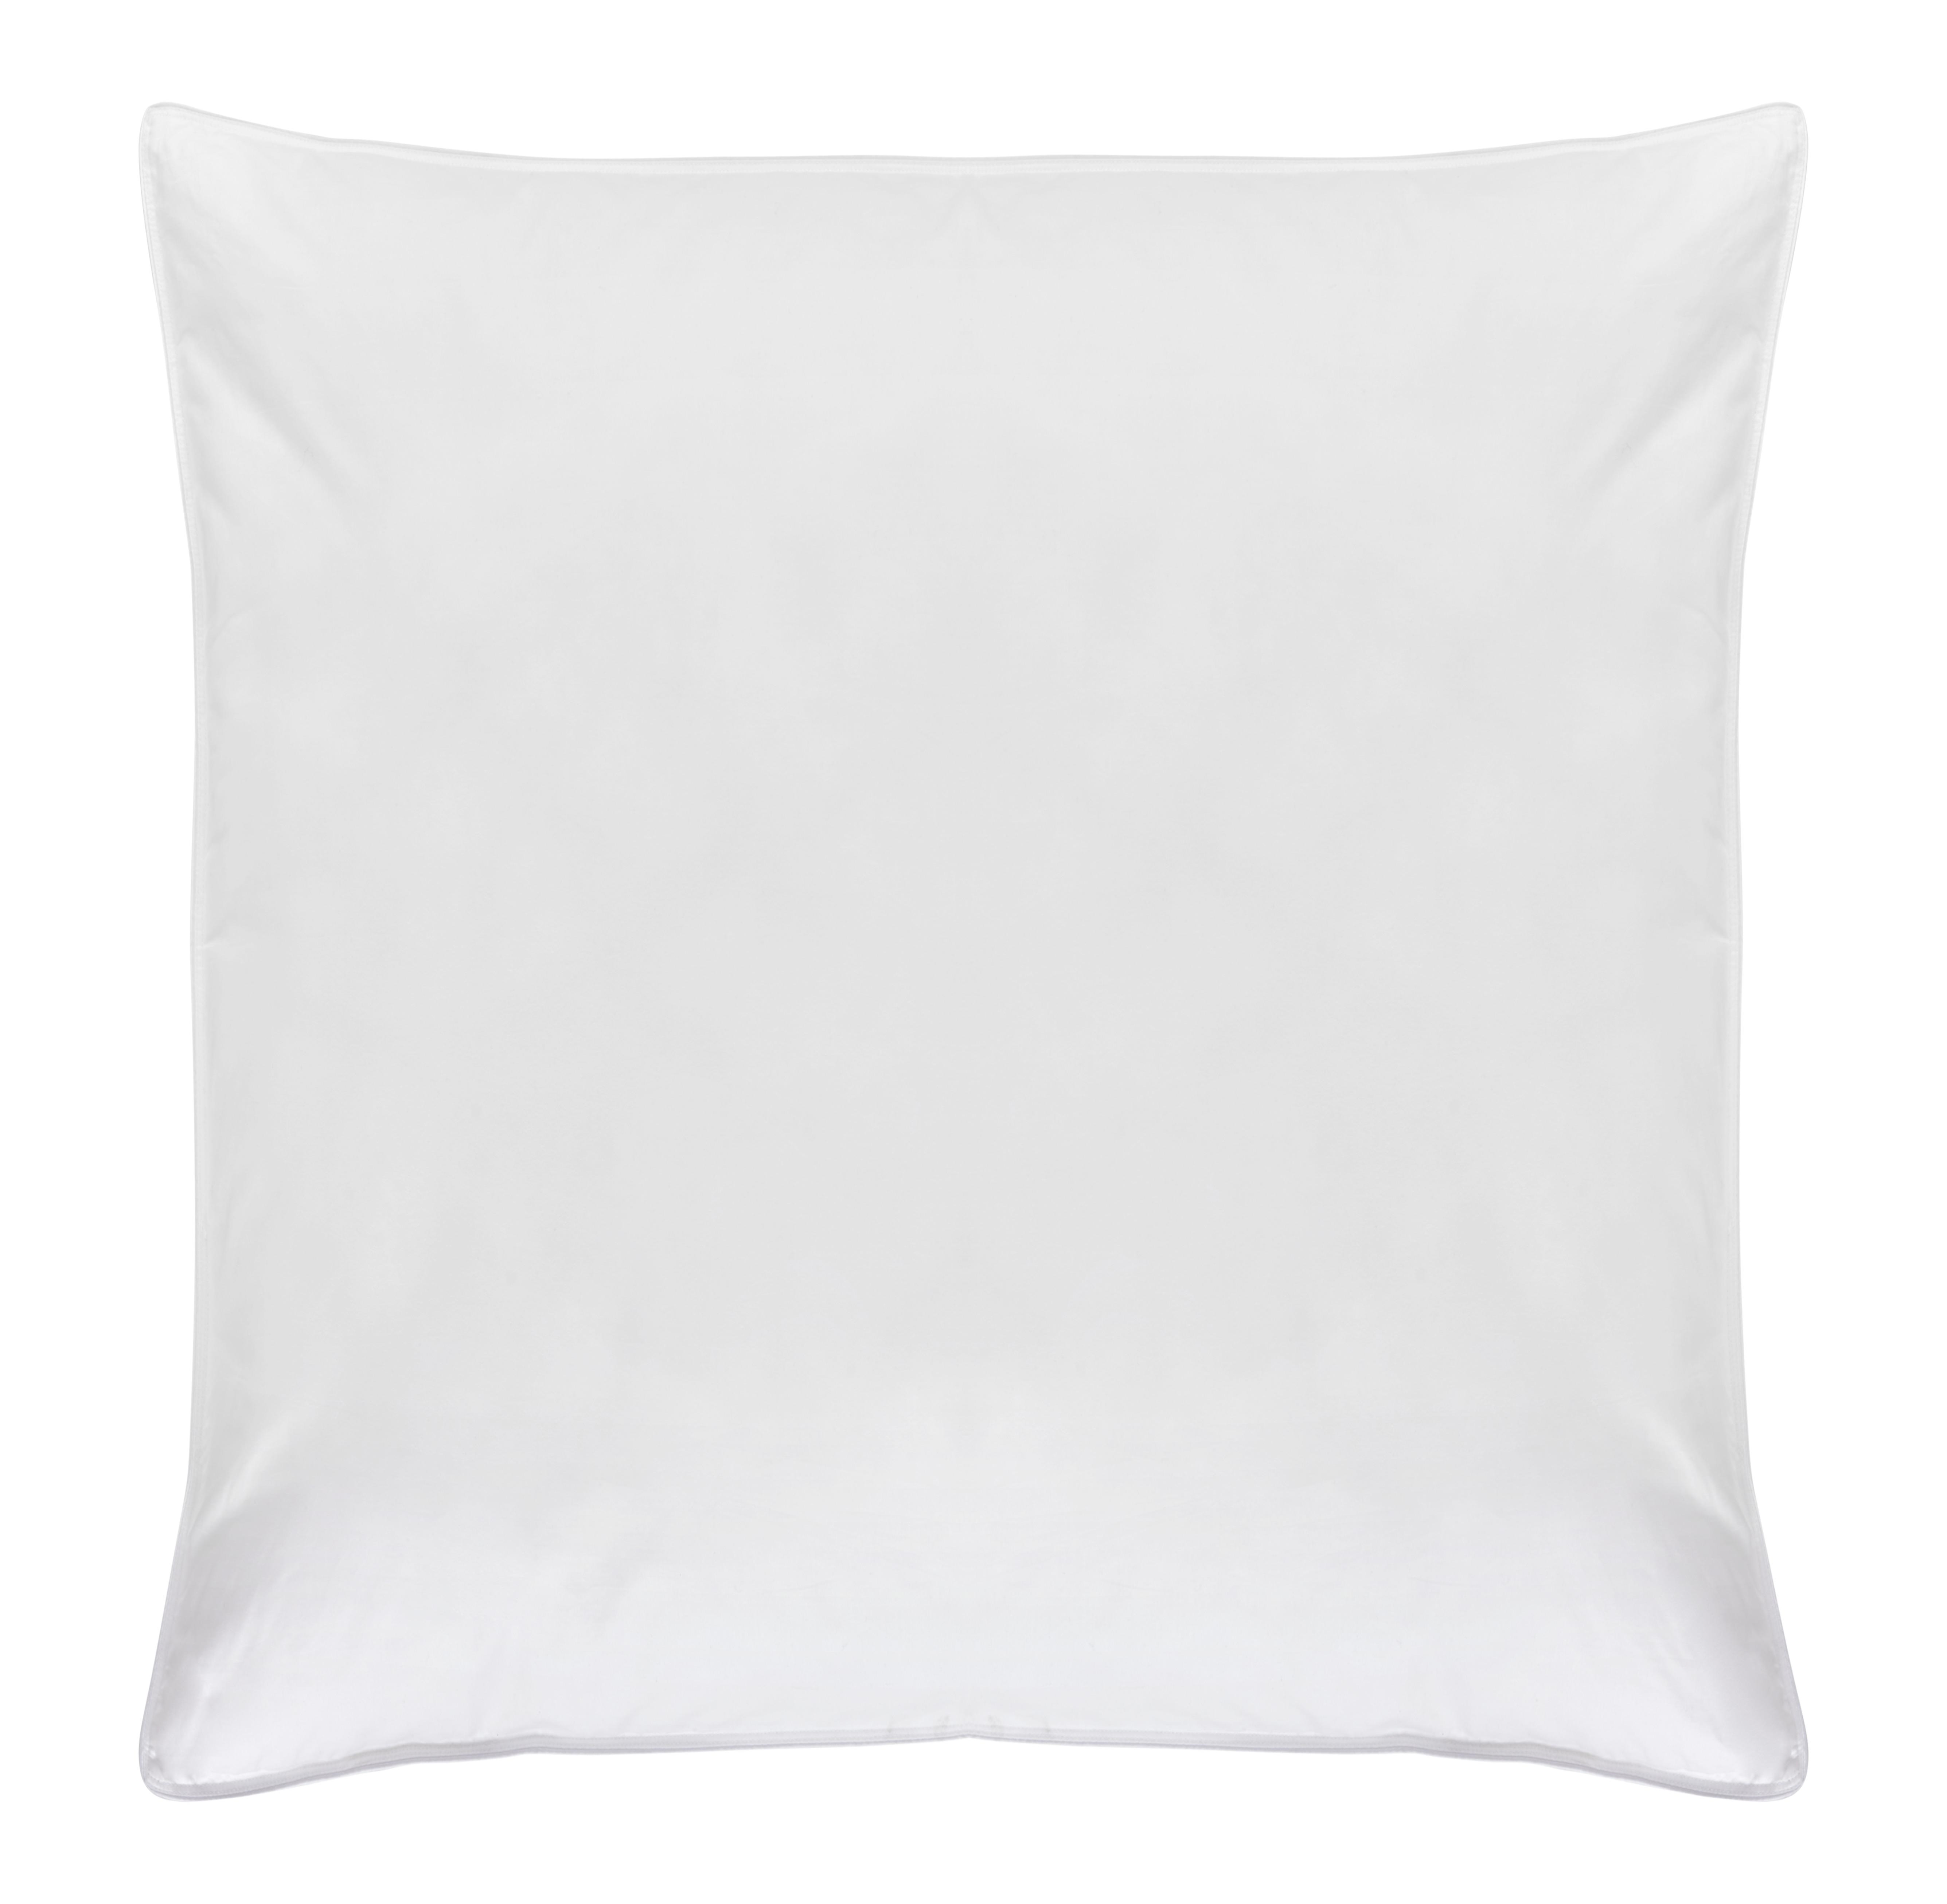 Kopfkissen Vegandown in Weiß ca. 80x80cm - Weiß, KONVENTIONELL, Textil (80/80cm) - Premium Living